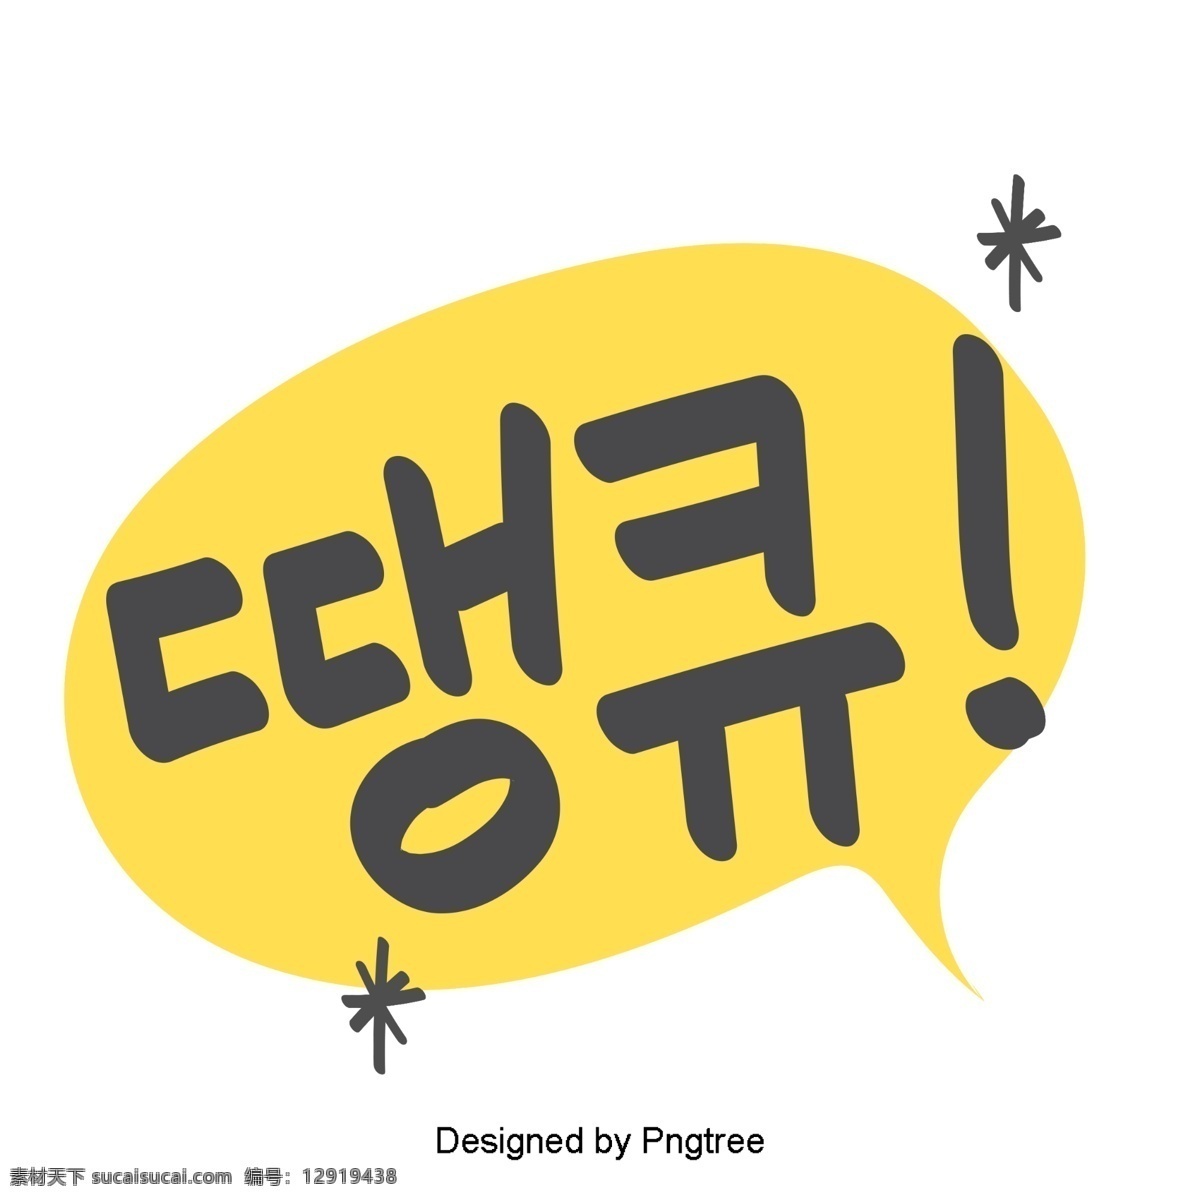 可爱 韩国 日常 表达 耳语 手中 字体 材料 黄色 语风 贴纸 每日词汇量 字形 移动支付